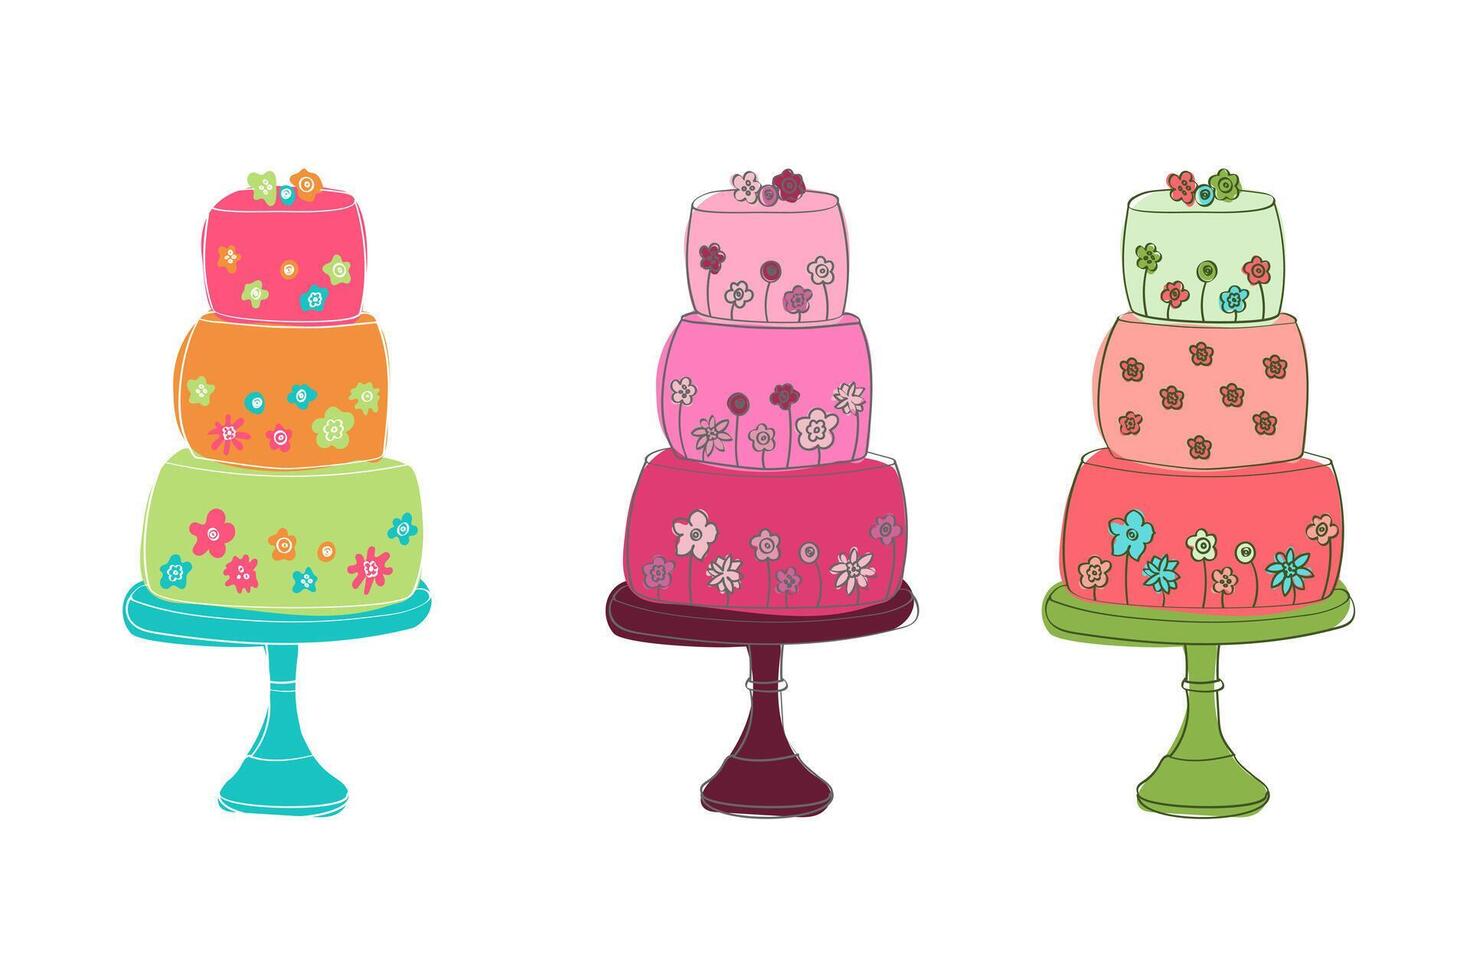 drie cakes van verschillend kleuren zijn geplaatst Aan top van elk ander, creëren een kleurrijk en visueel aantrekkelijk stack vector